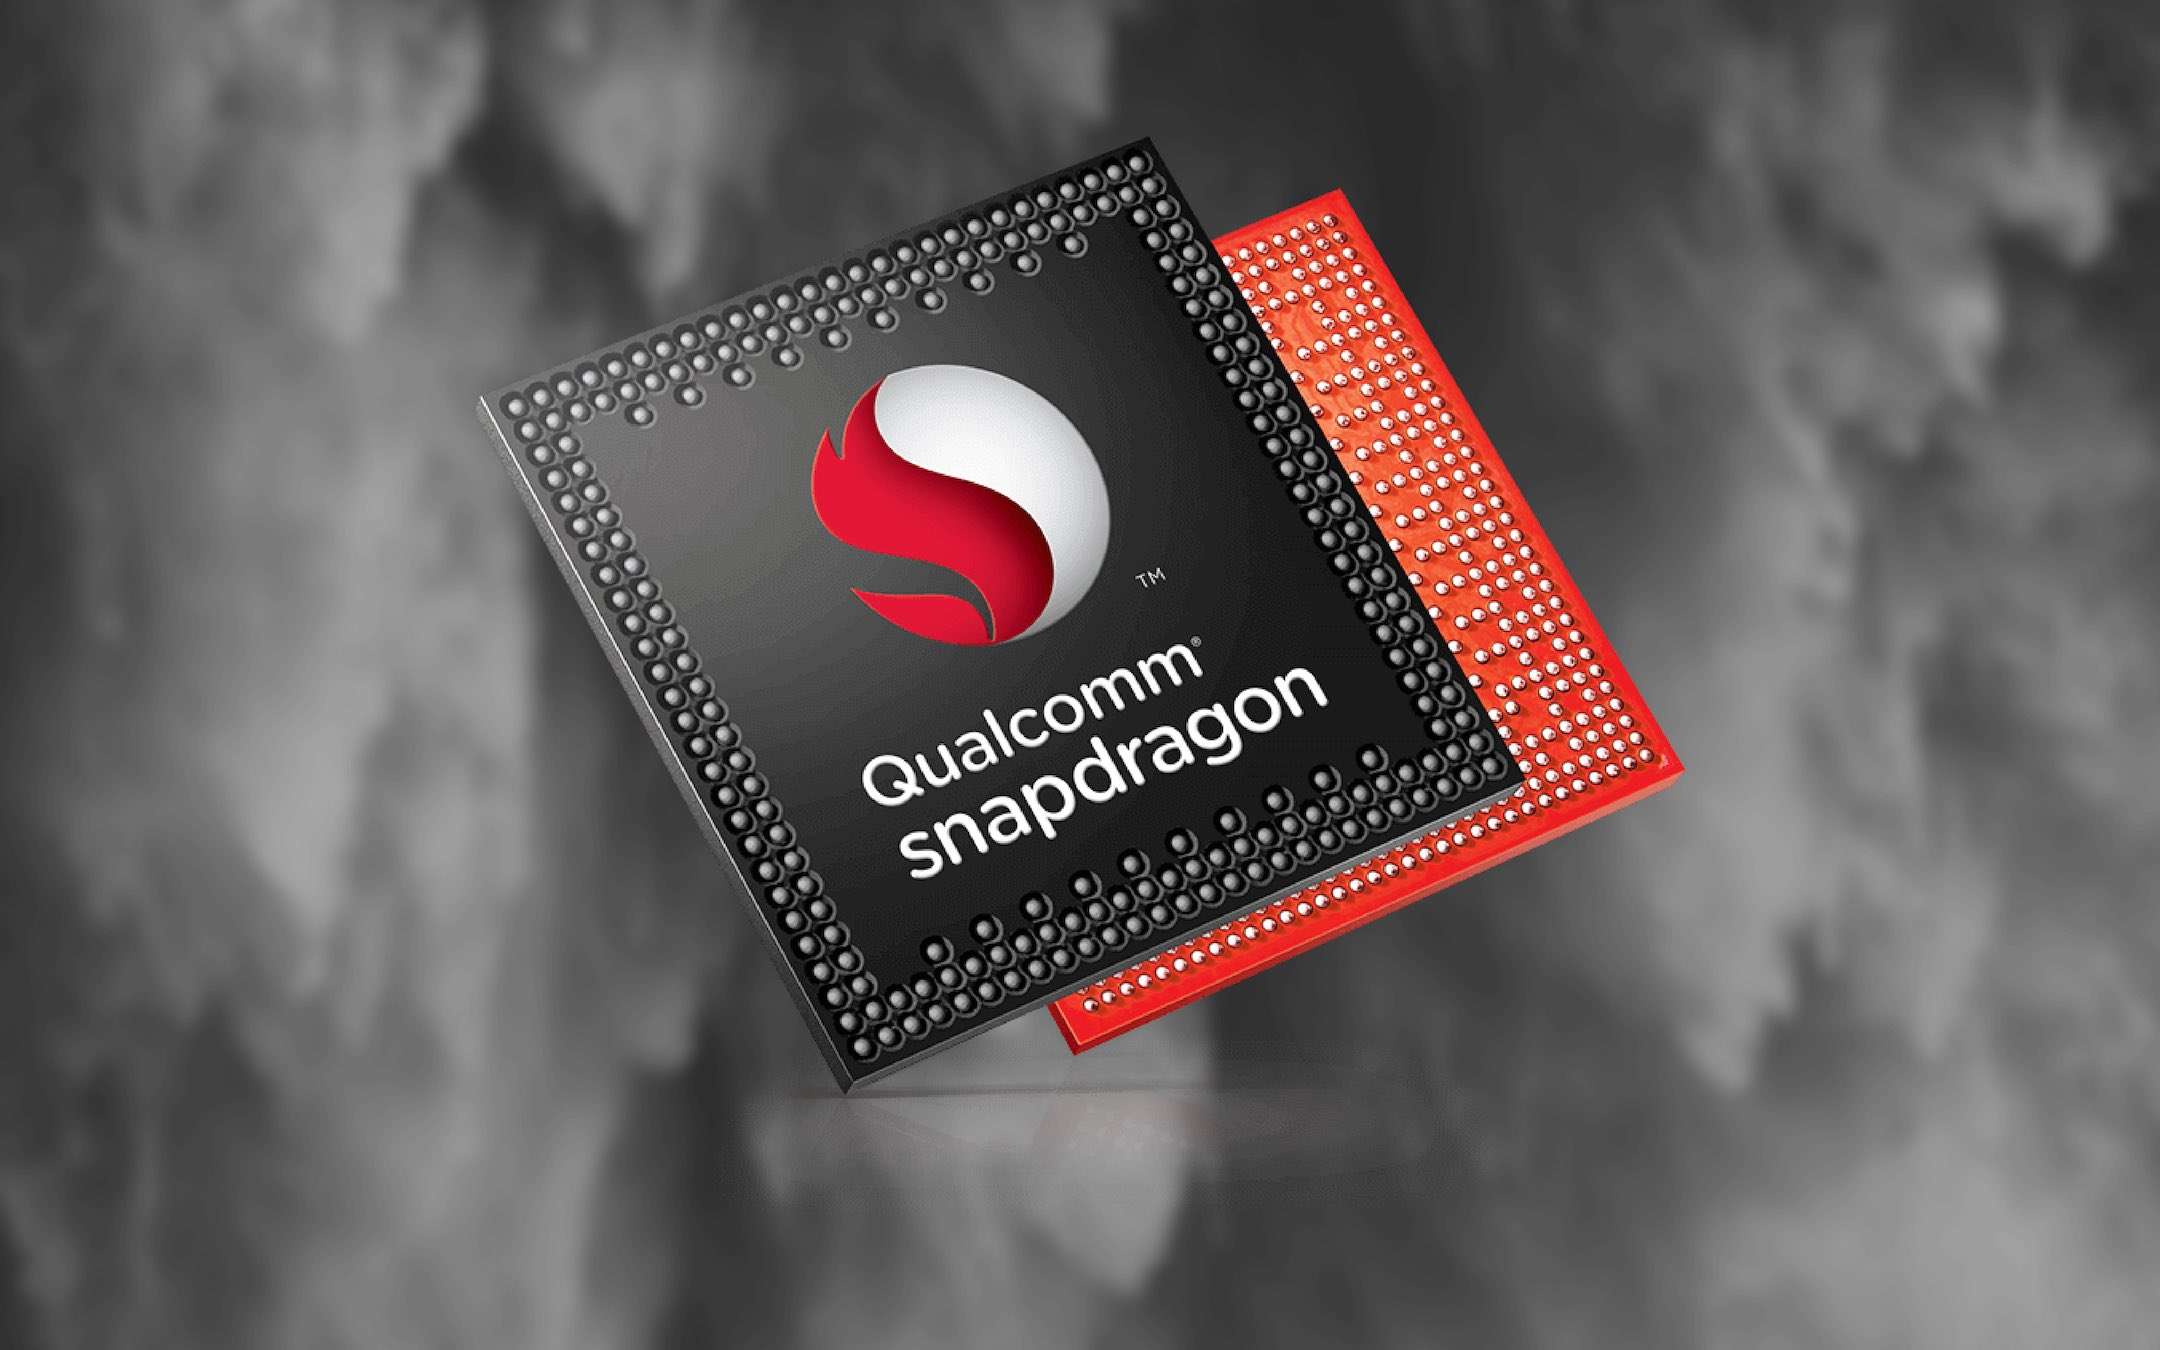 Snapdragon 855: tutti i dettagli prima del lancio